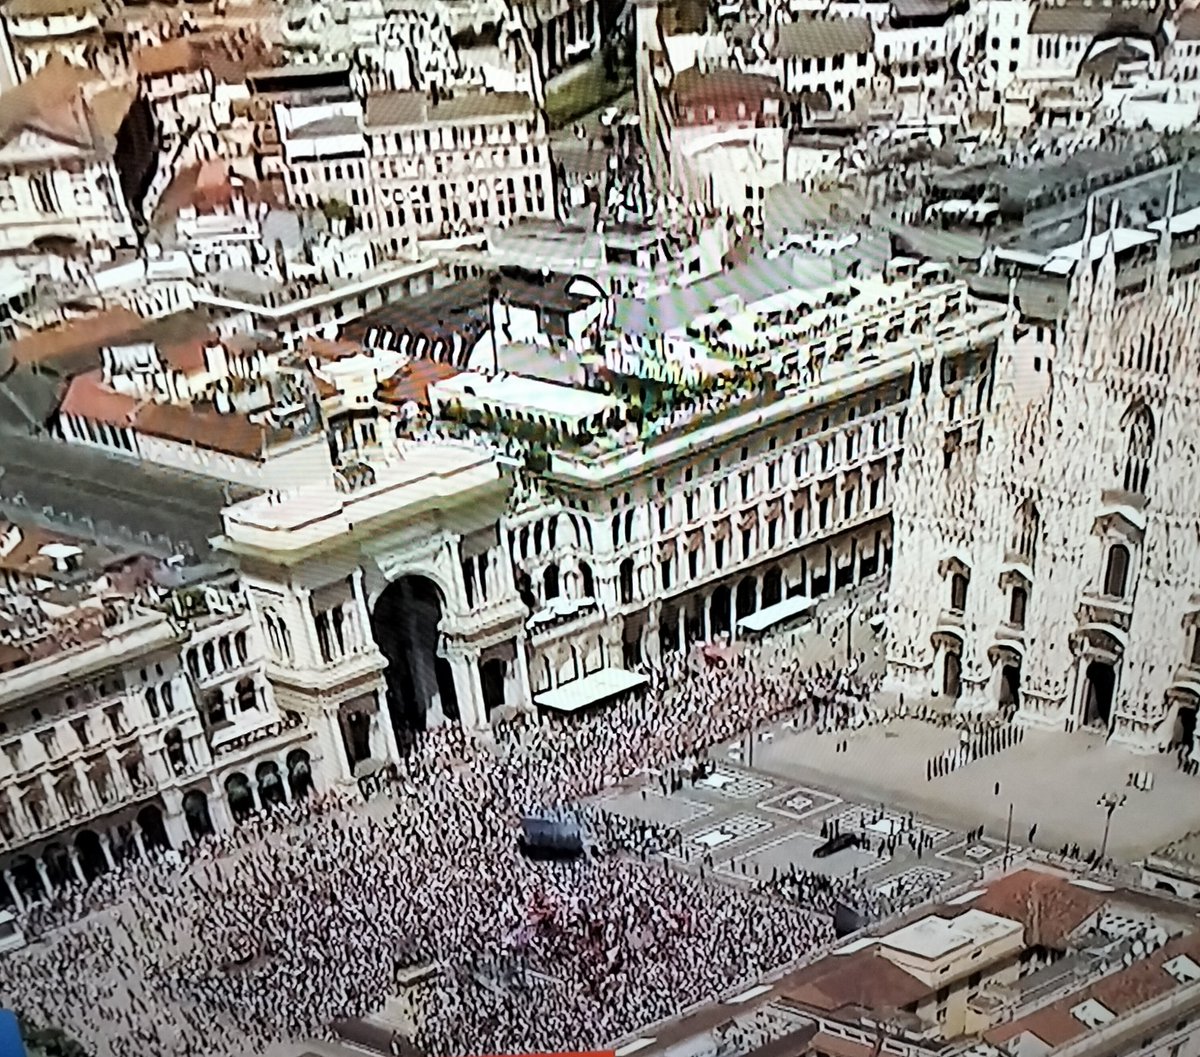 A sinistra la folla presente ai funerali di Enrico Berlinguer ( un milione e mezzo di persone).
A destra i 15.000 presenti ai funerali di Berlusconi.
#luttonazionale